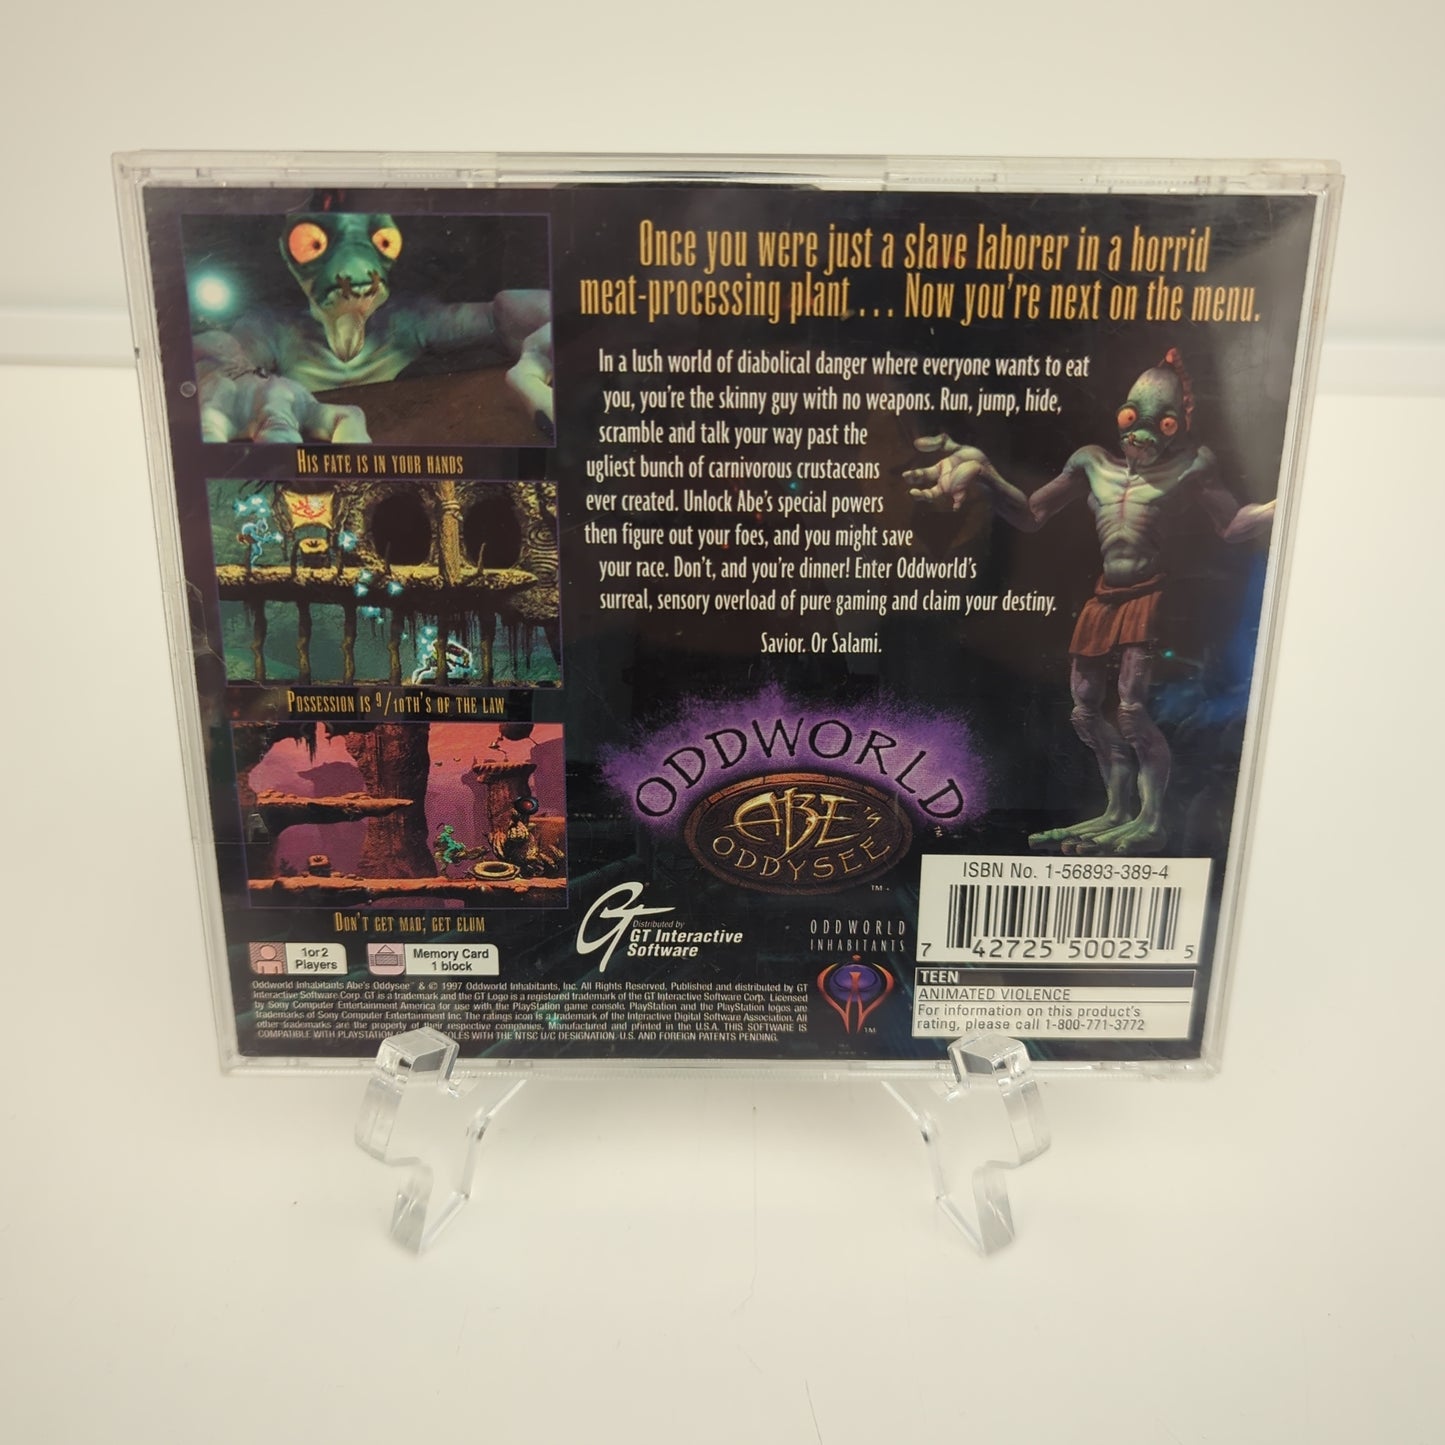 Oddworld Abe's Oddysee - Playstation